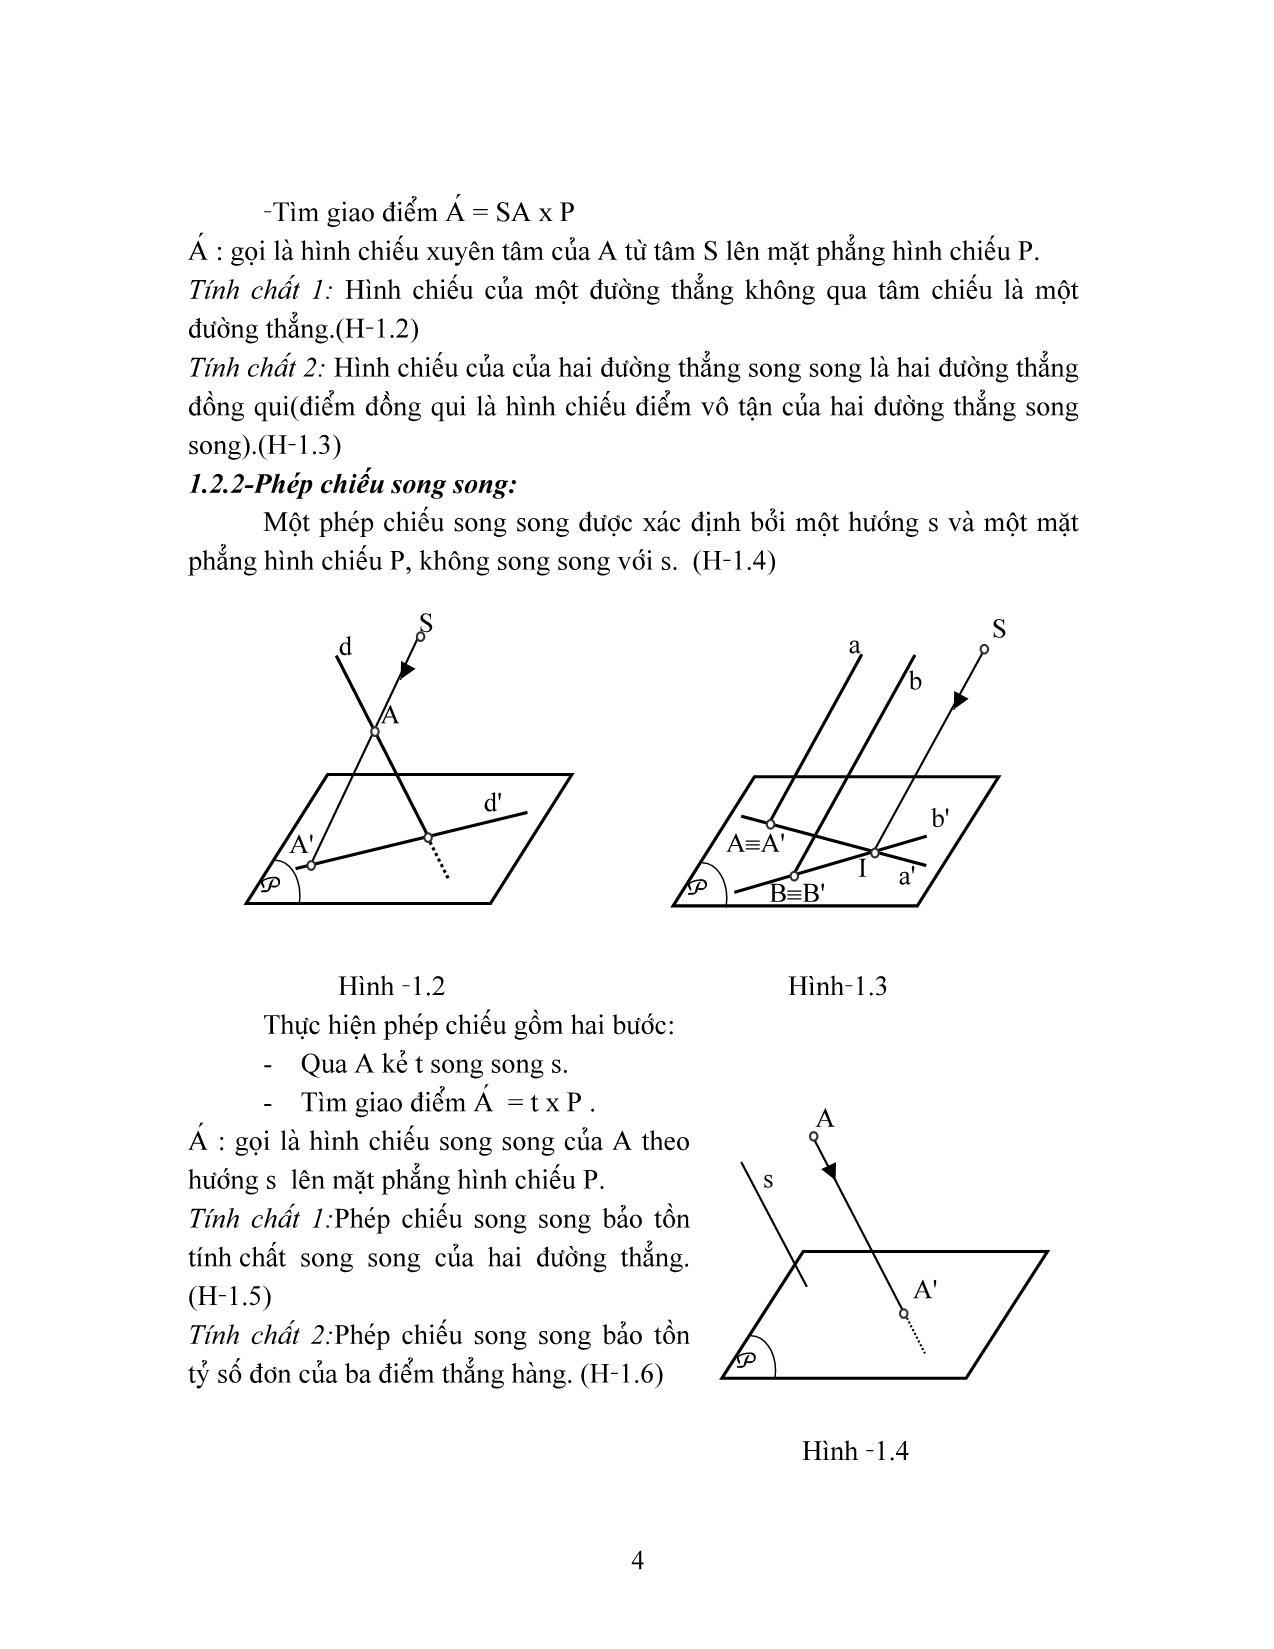 Giáo trình Hình học họa hình (Phần 1) trang 4